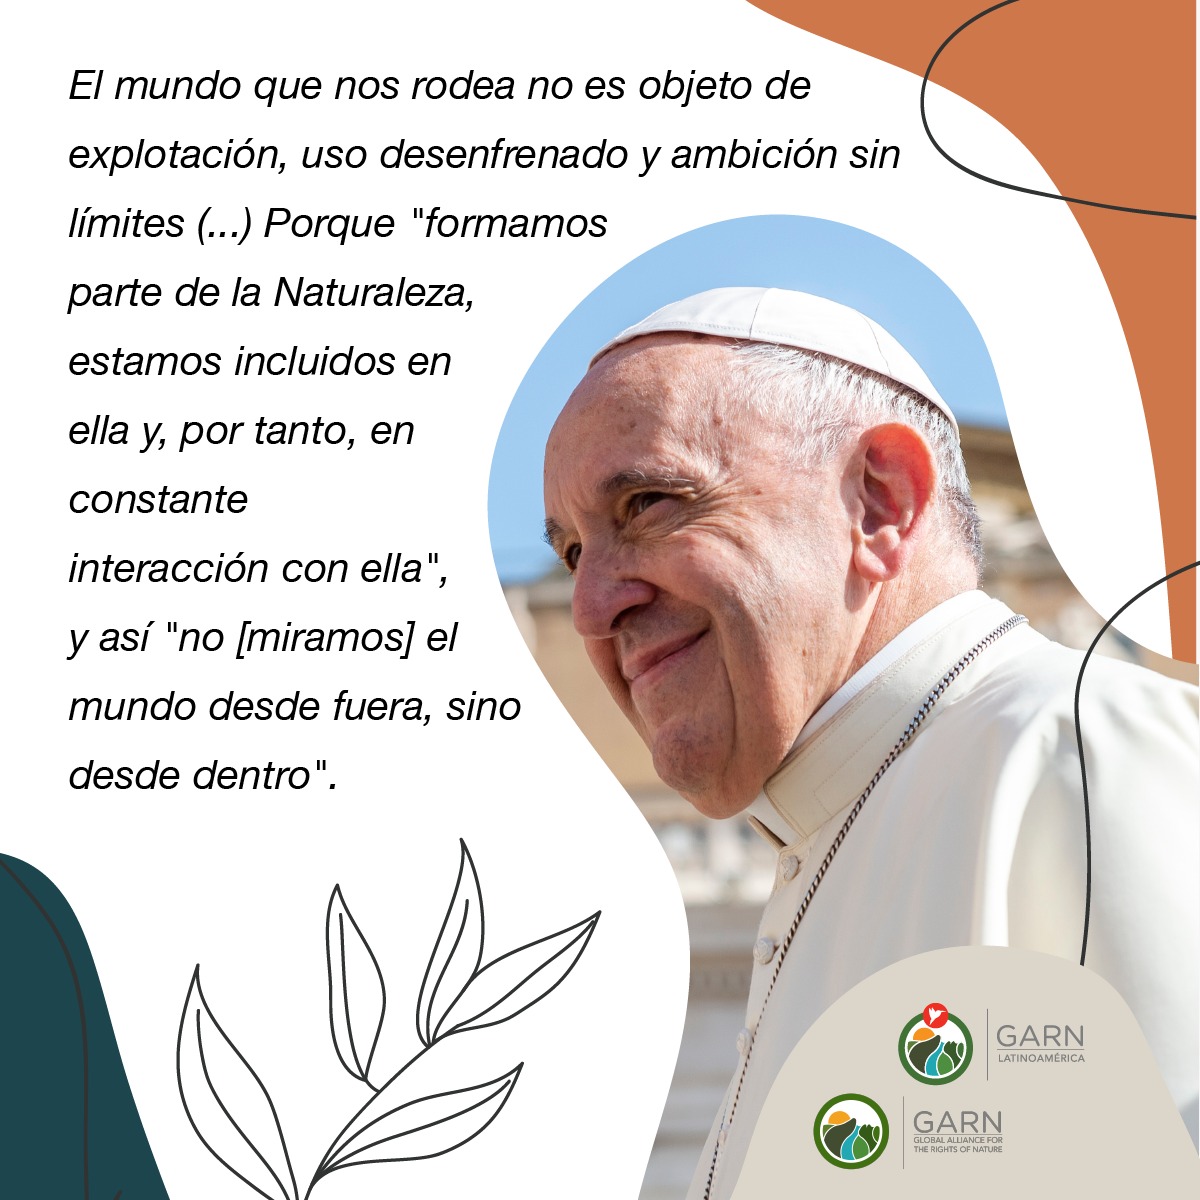 Laudate Deum. El Papa Francisco en apoyo a los Derechos de la Naturaleza